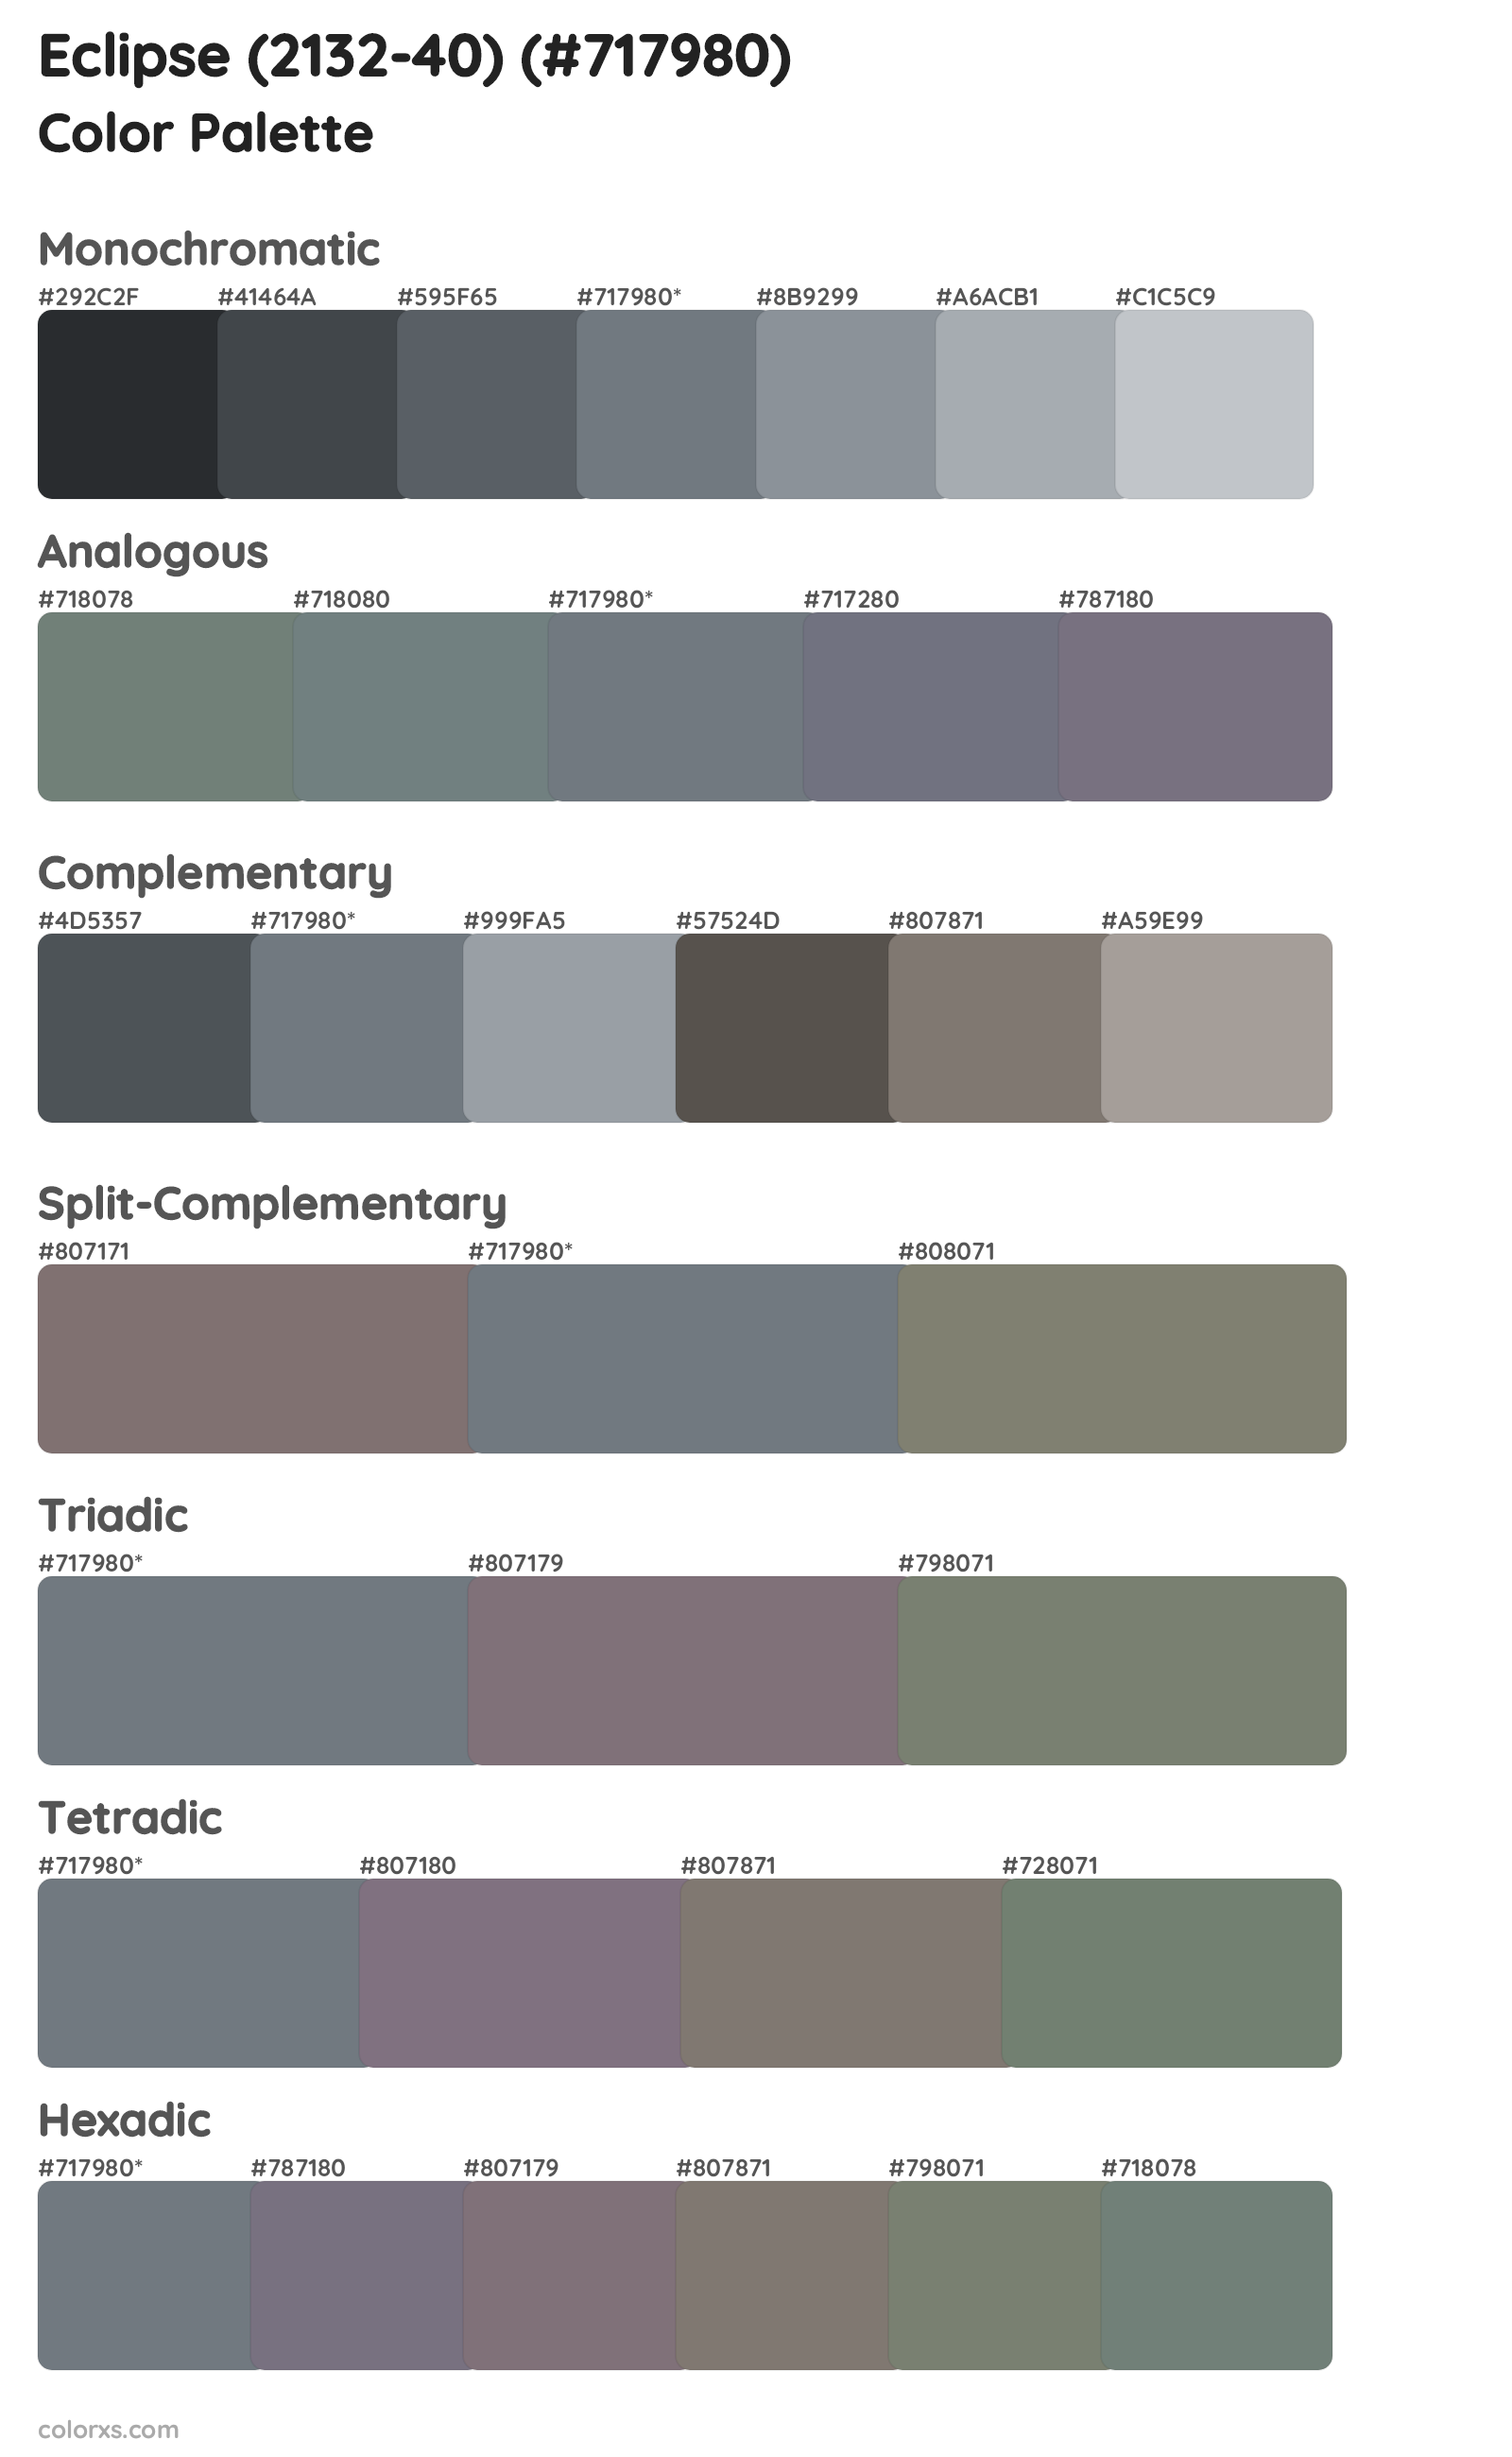 Eclipse (2132-40) Color Scheme Palettes